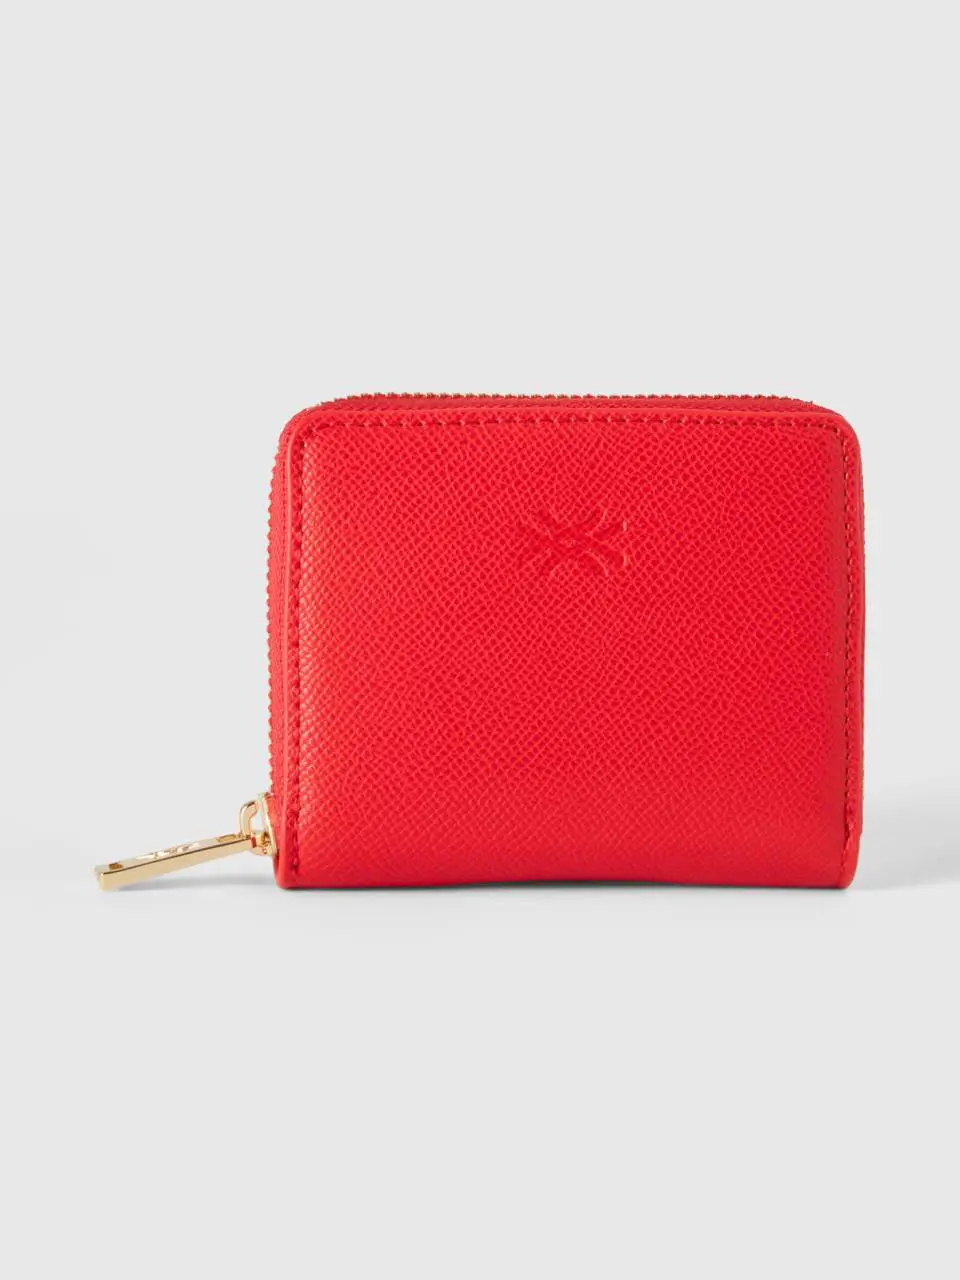 Benetton small zip wallet. 1